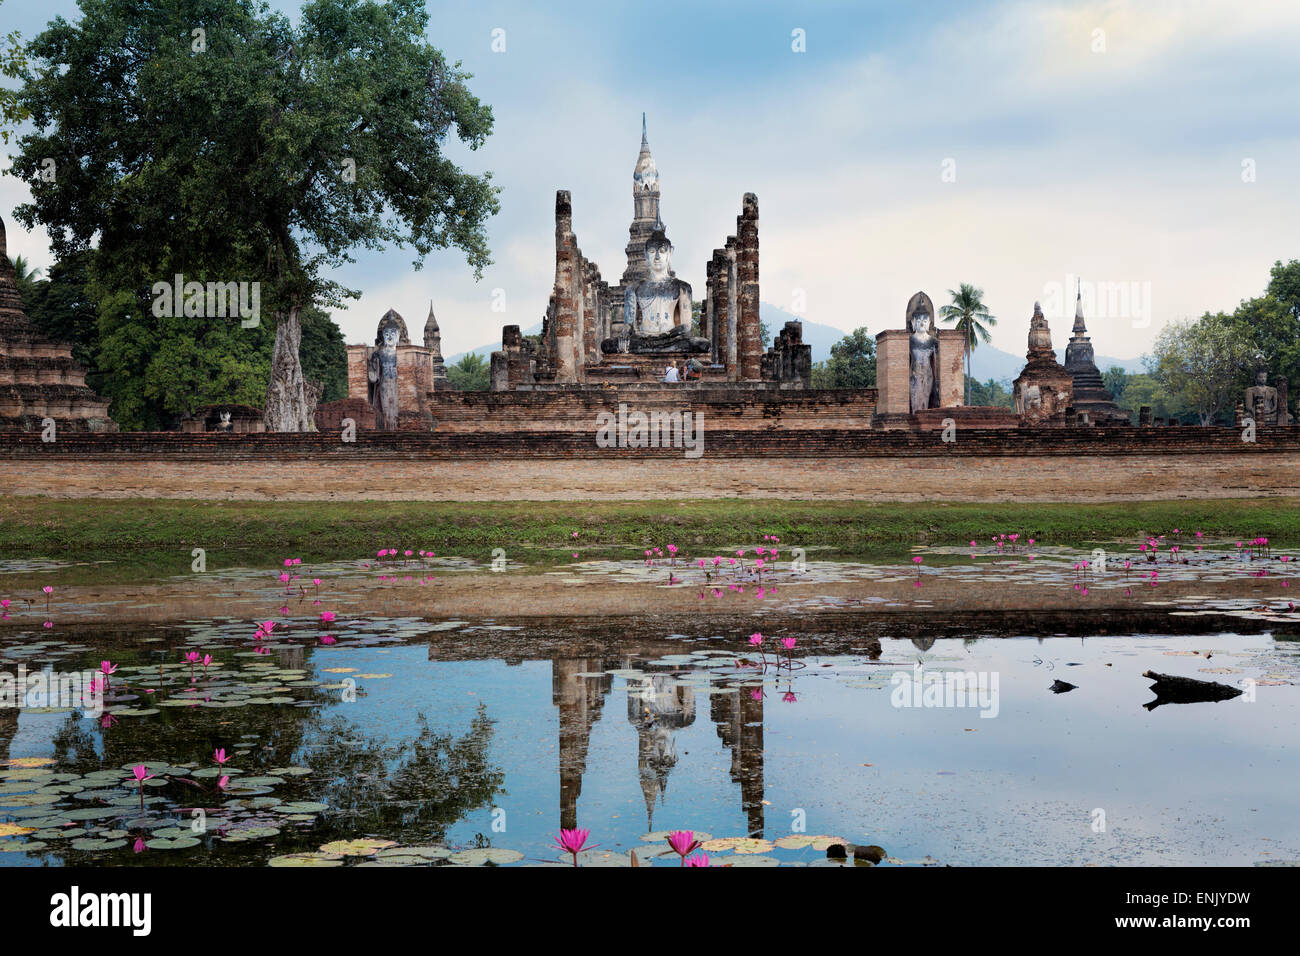 Un Buda de la era de Sukhothai Wat Mahathat, el Parque Histórico de Sukhothai, Patrimonio Mundial de la UNESCO, Tailandia, el sudeste de Asia, Asia Foto de stock